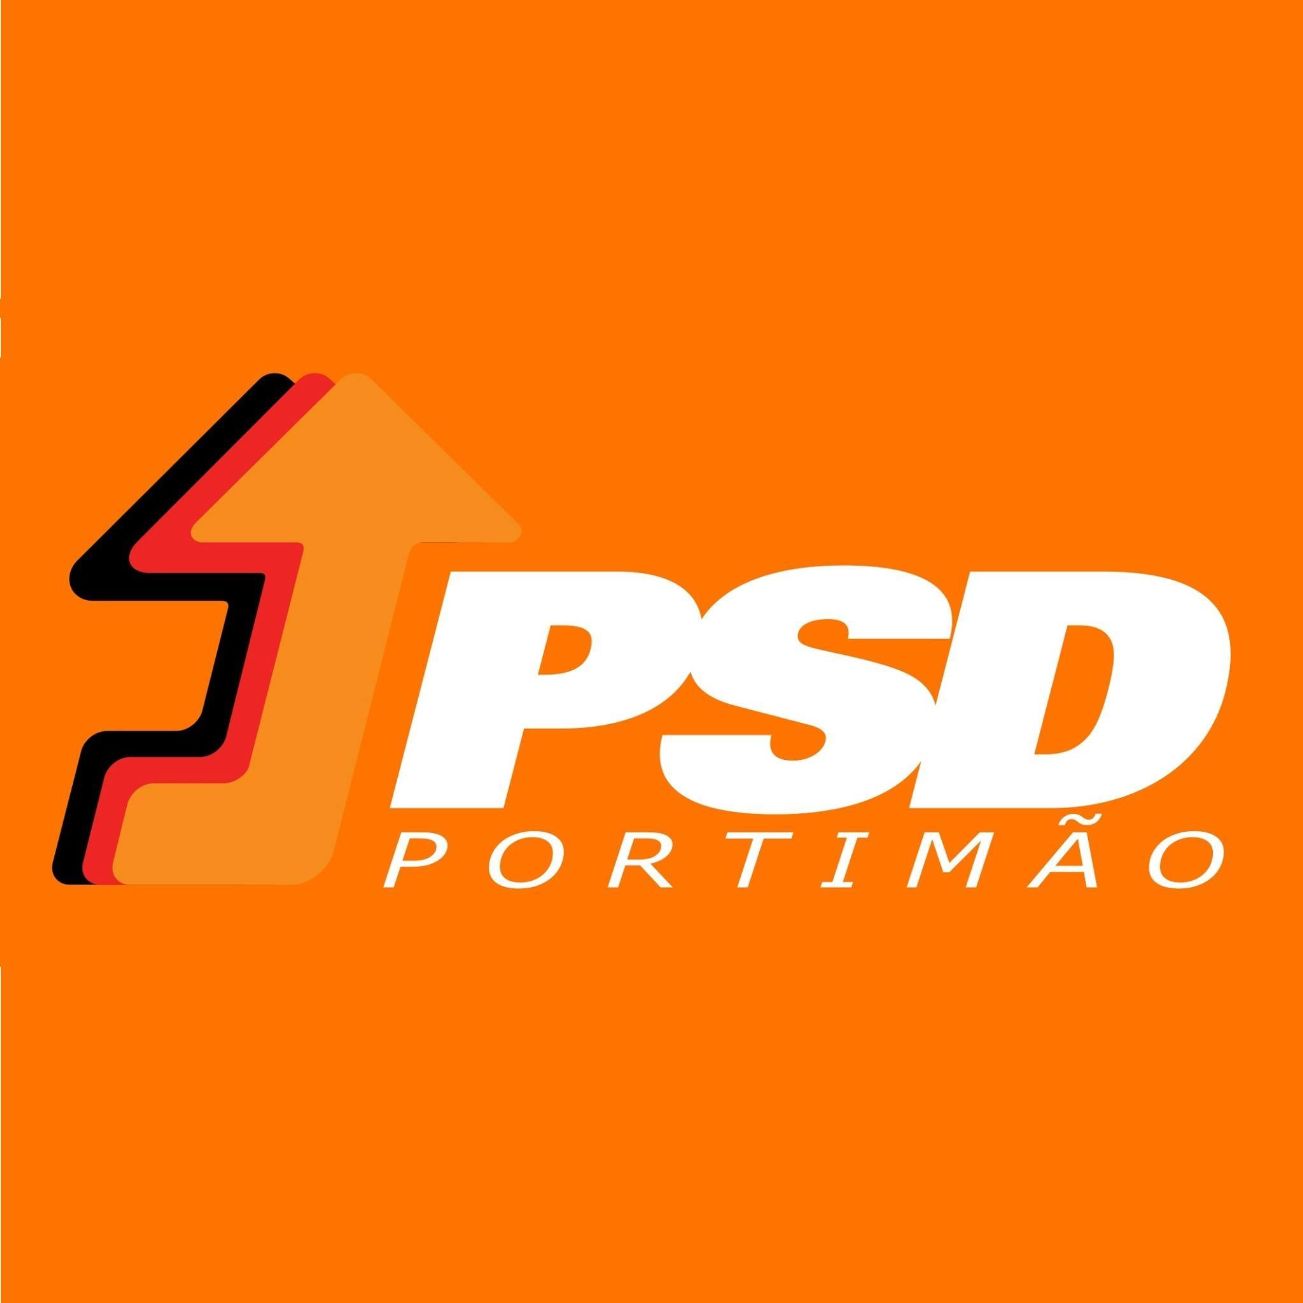 PS e Isilda Gomes adjudicam 74.935 euros (máximo de 75 mil euros no procedimento de consulta prévia) a membro da sua lista candidata à Câmara Municipal no actual Mandato